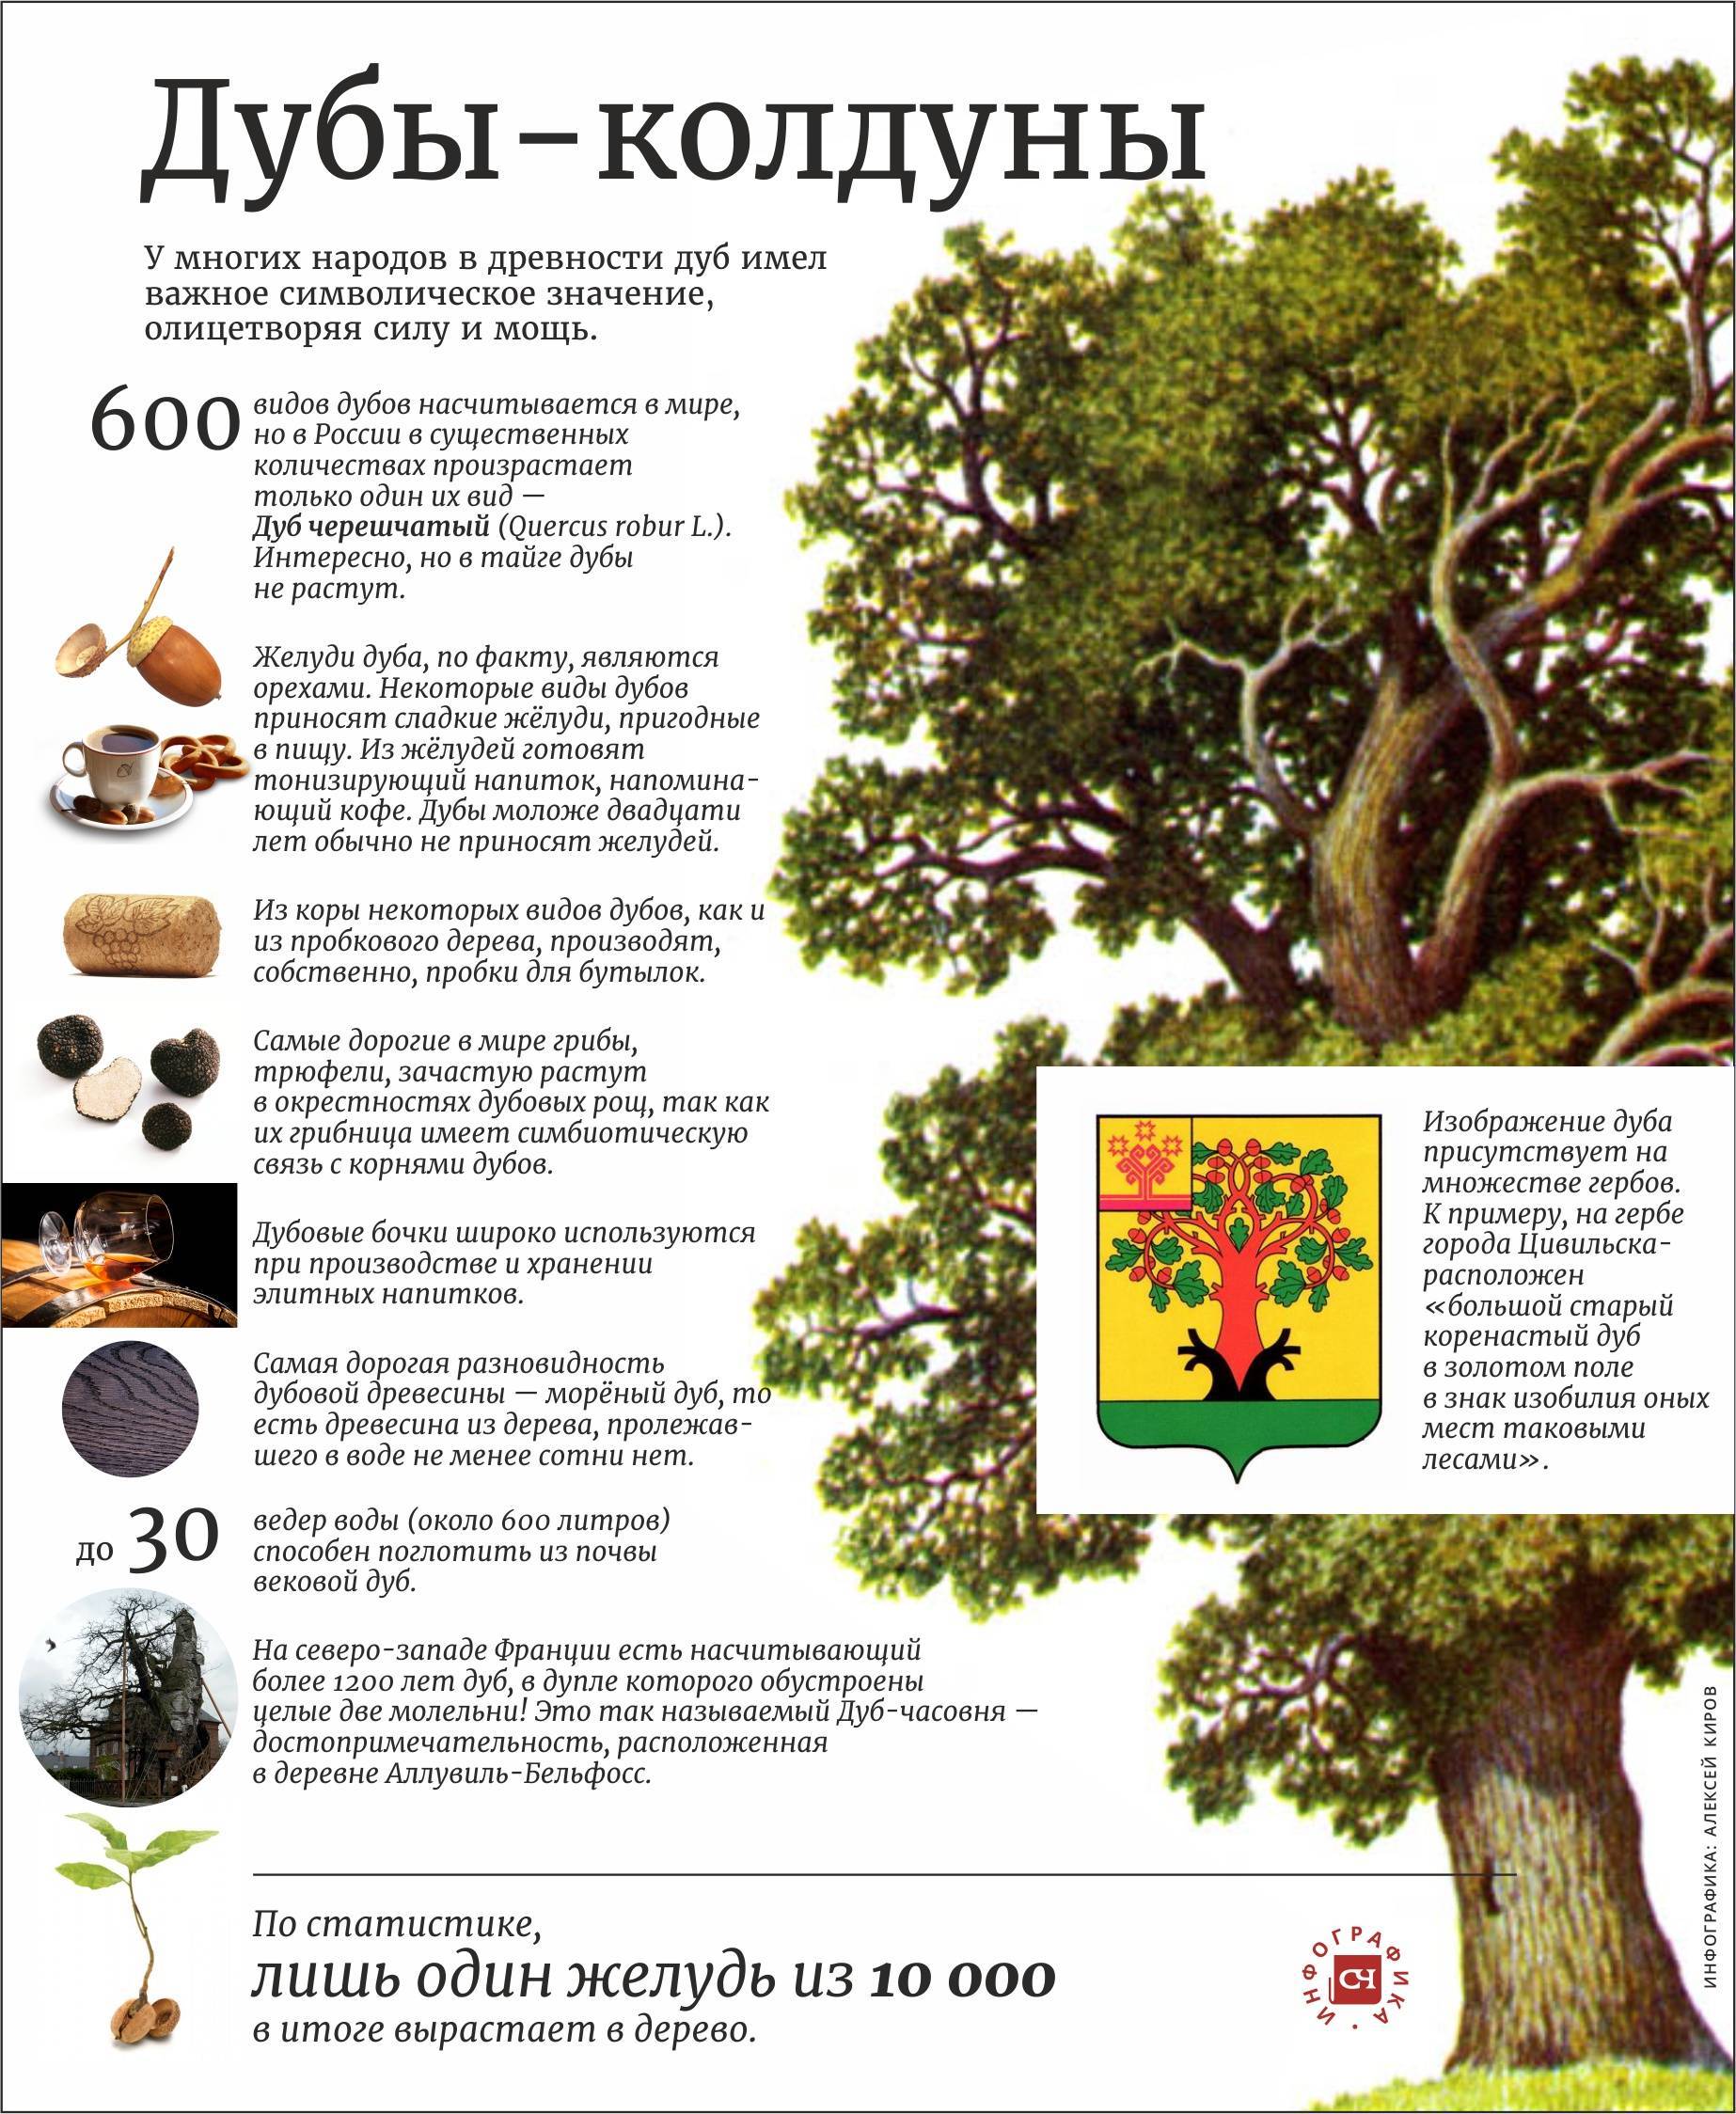 Текст про дуб. Описание дуба. Интересные факты о дубе. Дуб дерево описание. Удивительные факты про дуб.